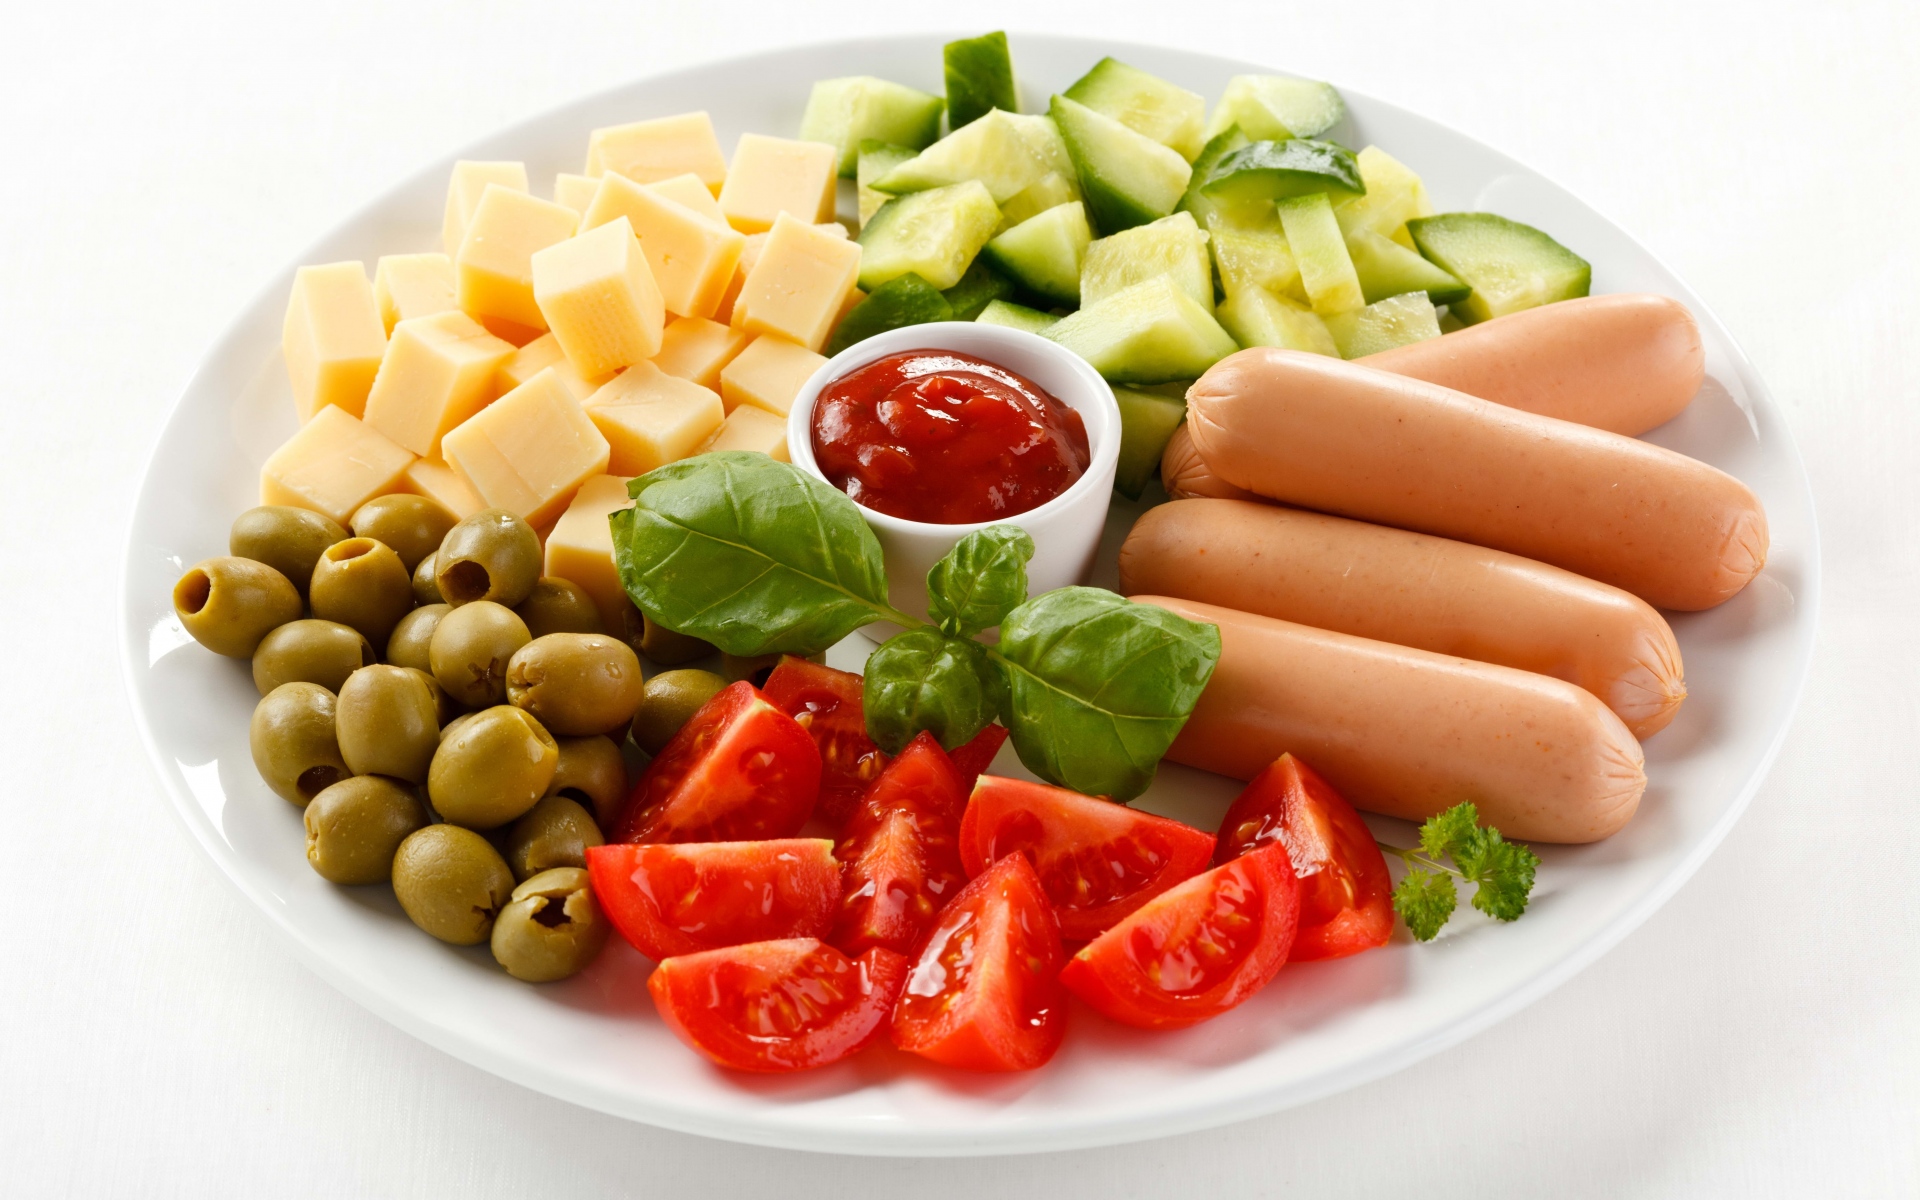 Картинки Плита, ломтики, сыр, колбасы, оливки, помидоры, огурцы, кетчуп, листья фото и обои на рабочий стол